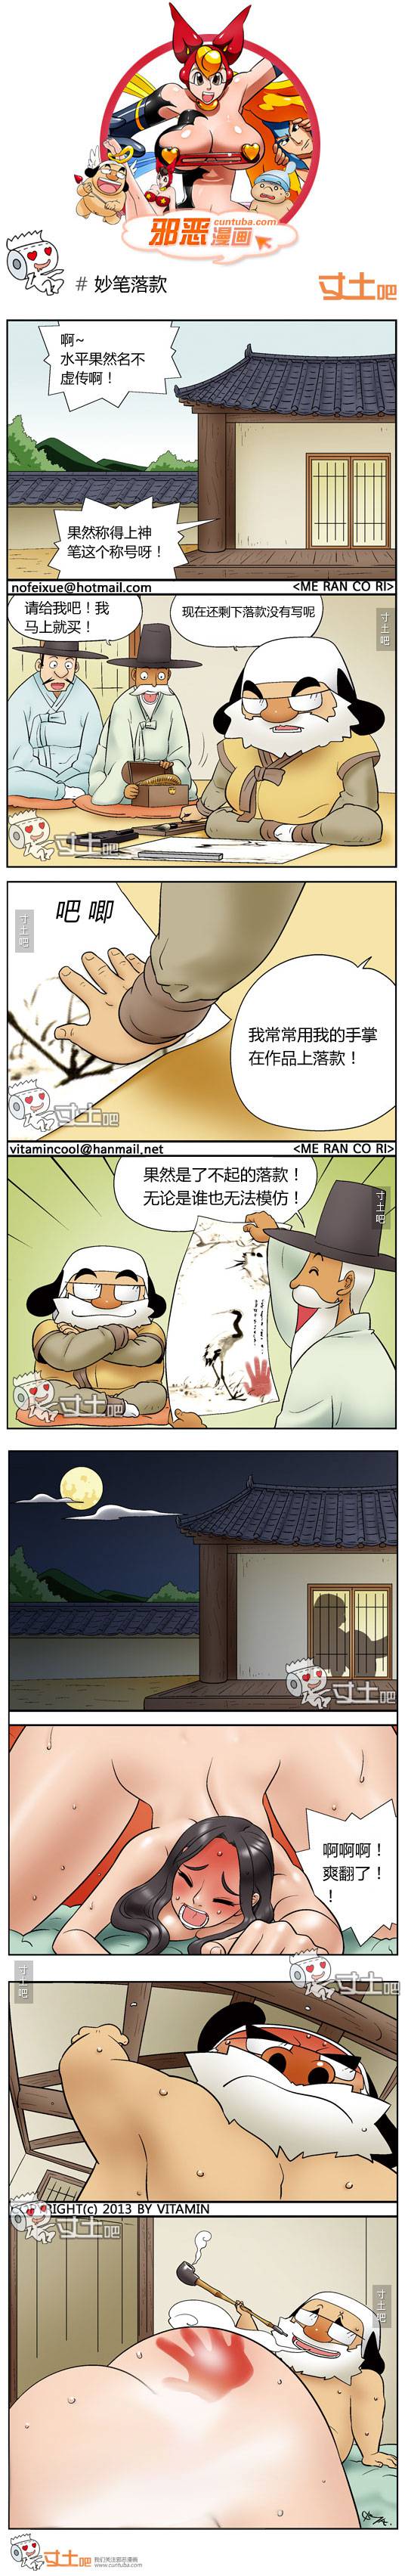 邪恶漫画爆笑囧图第136刊：发挥作用